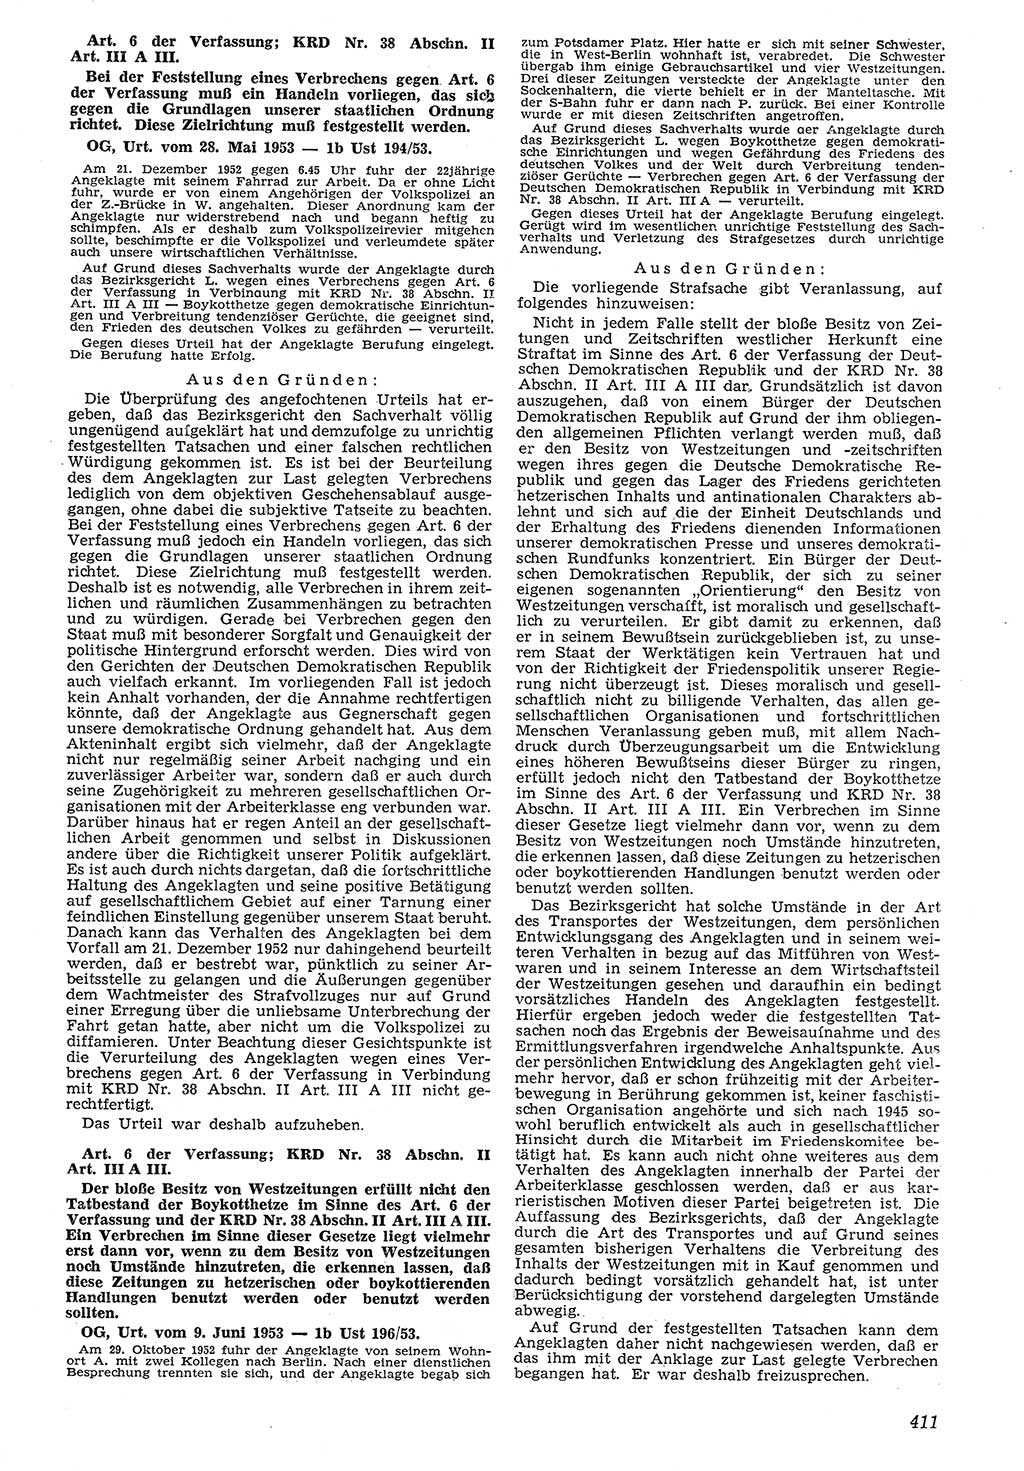 Neue Justiz (NJ), Zeitschrift für Recht und Rechtswissenschaft [Deutsche Demokratische Republik (DDR)], 7. Jahrgang 1953, Seite 411 (NJ DDR 1953, S. 411)